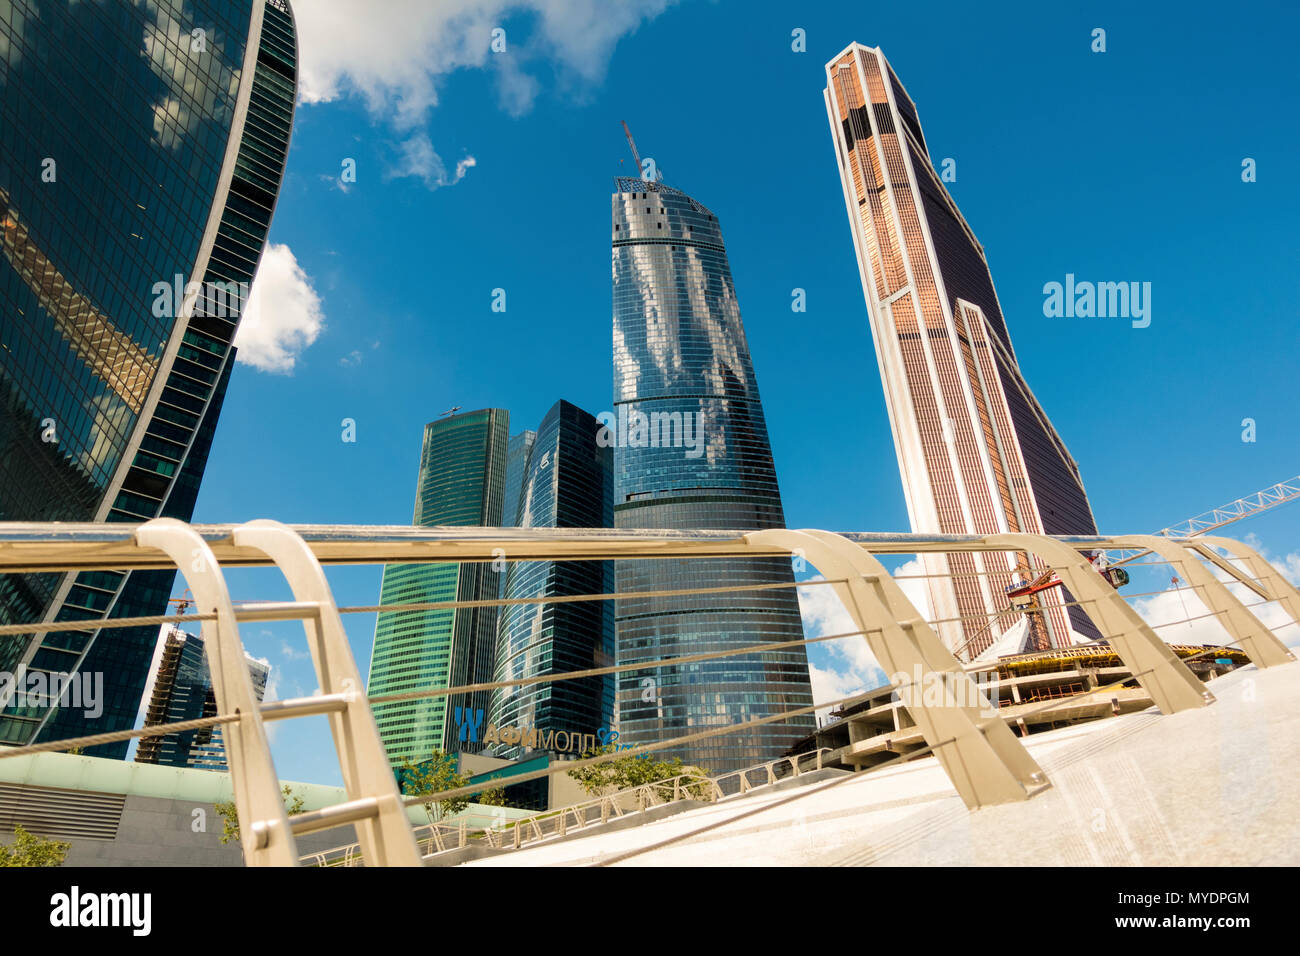 Des gratte-ciel, Moscou, Russie. Photographié en août 2015. Banque D'Images